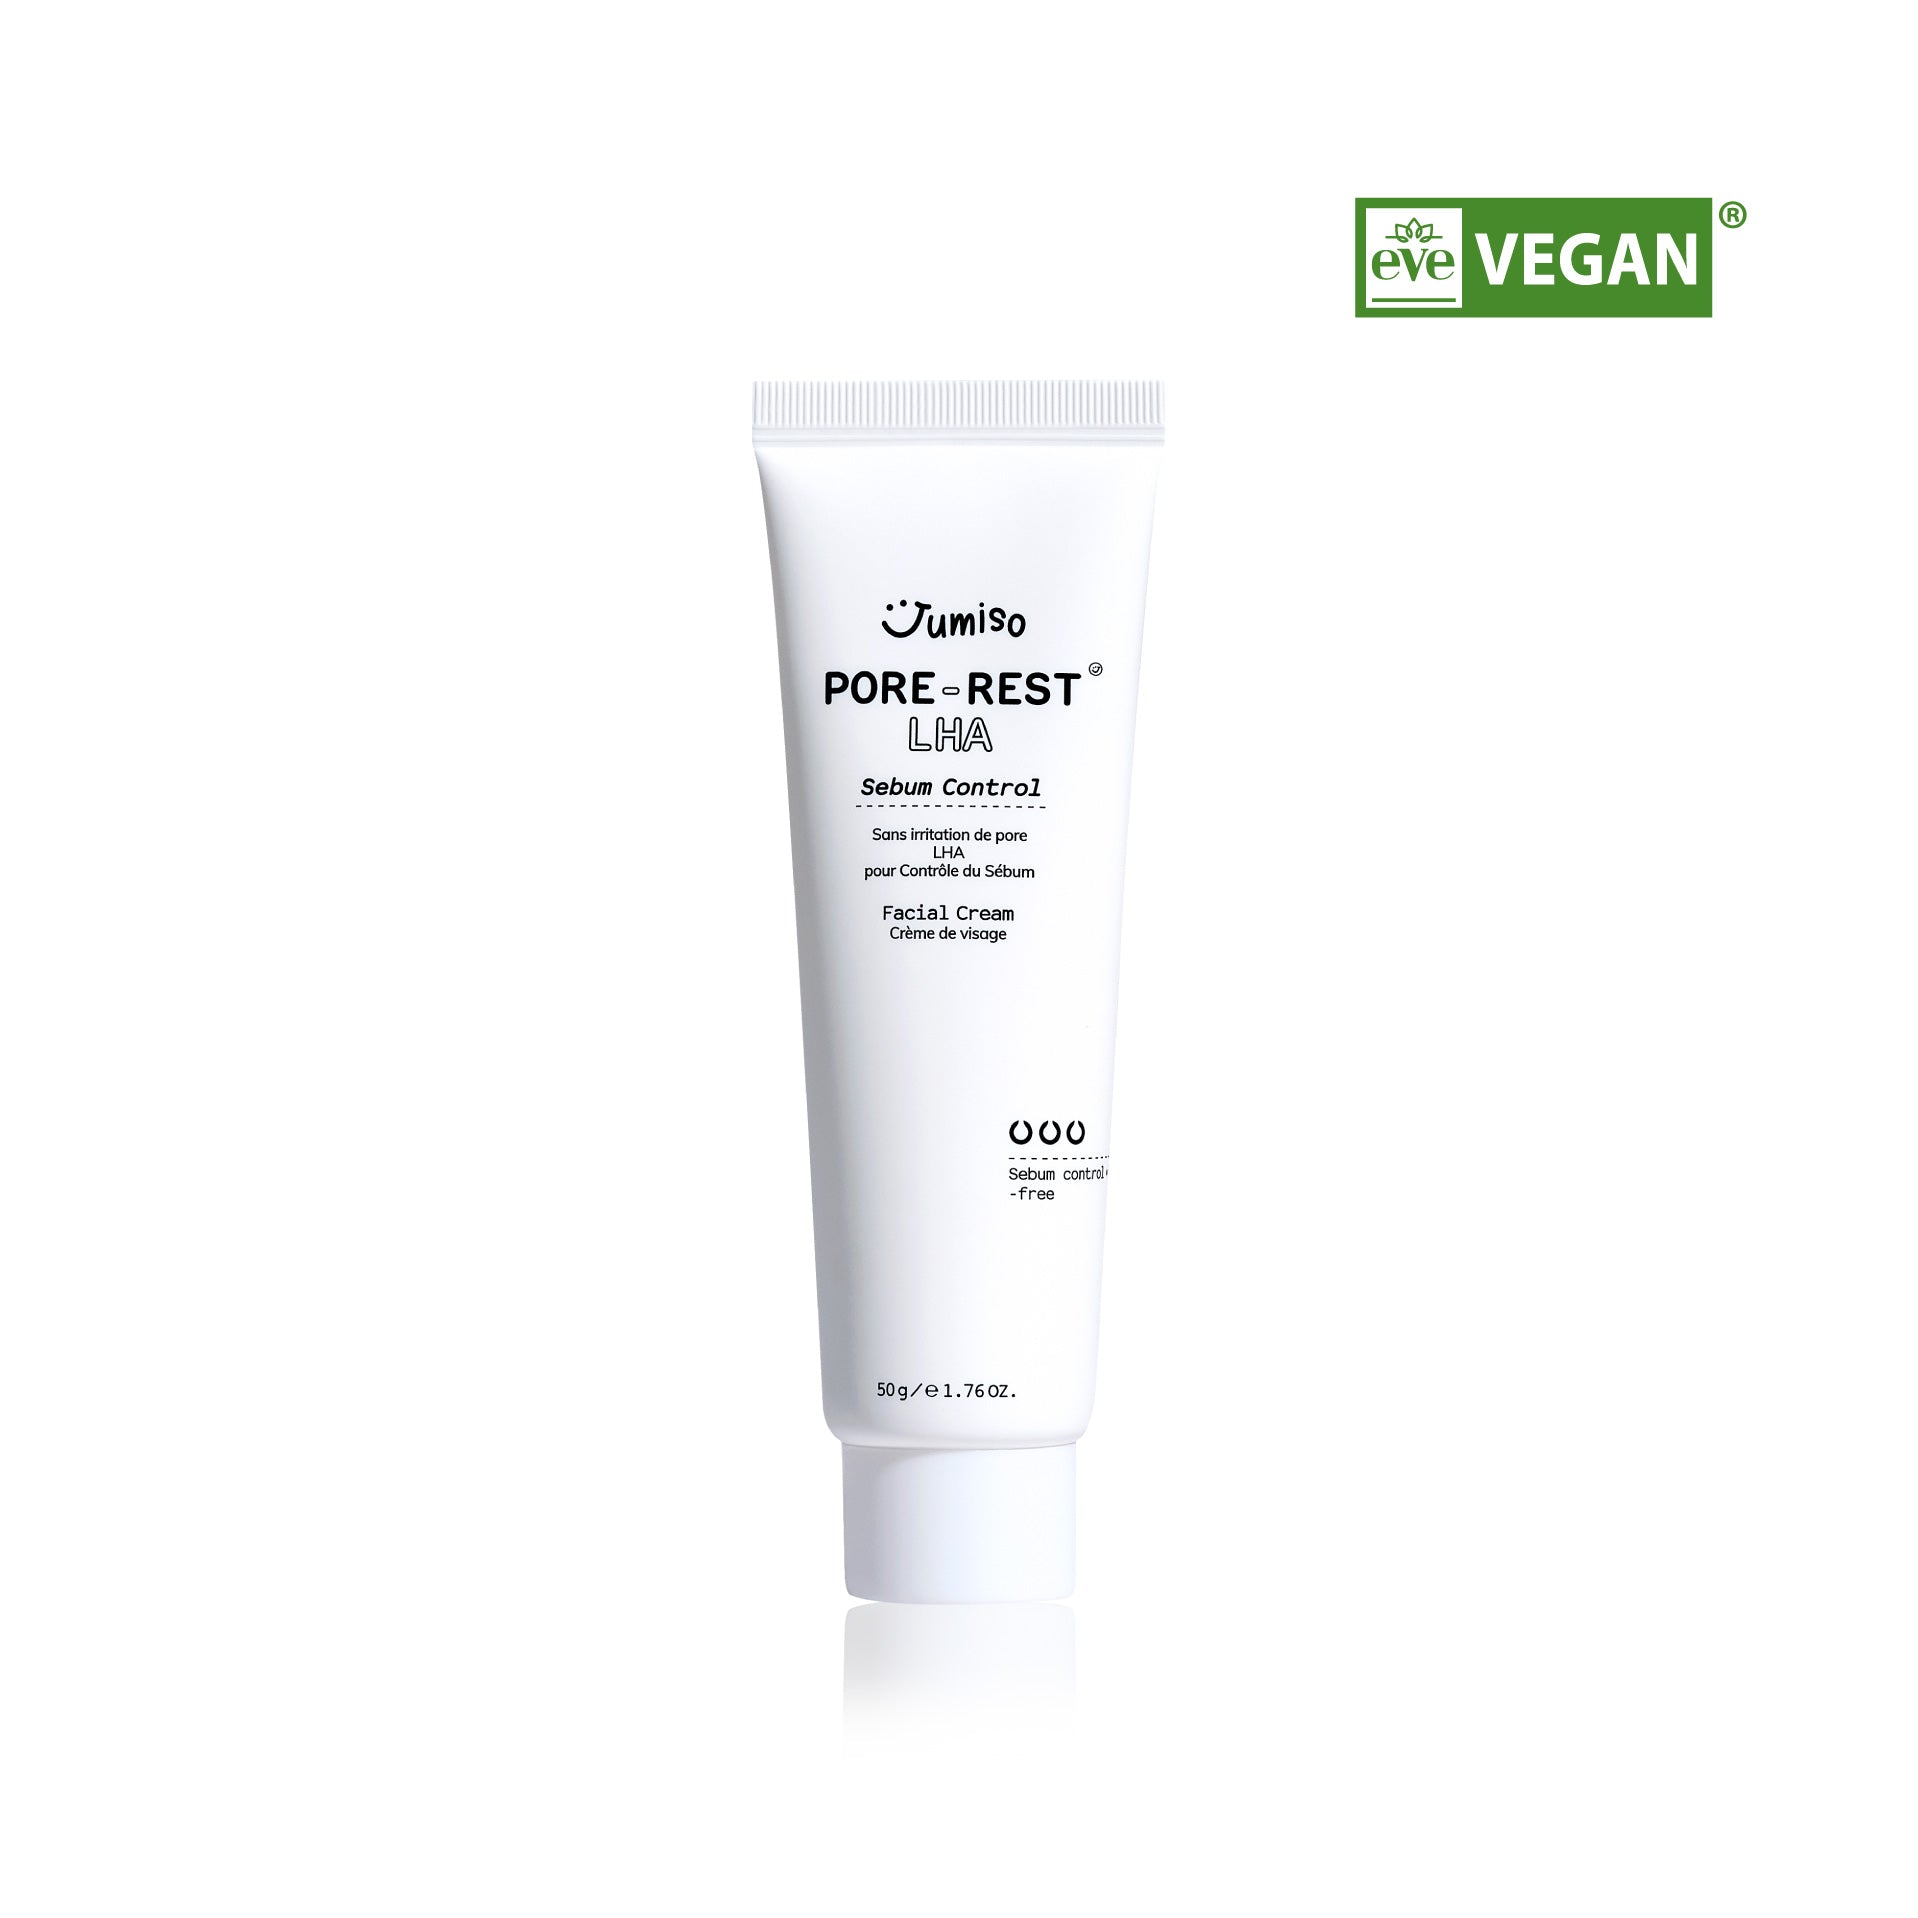 Pore-Rest LHA Sebum Control Facial Cream 50g